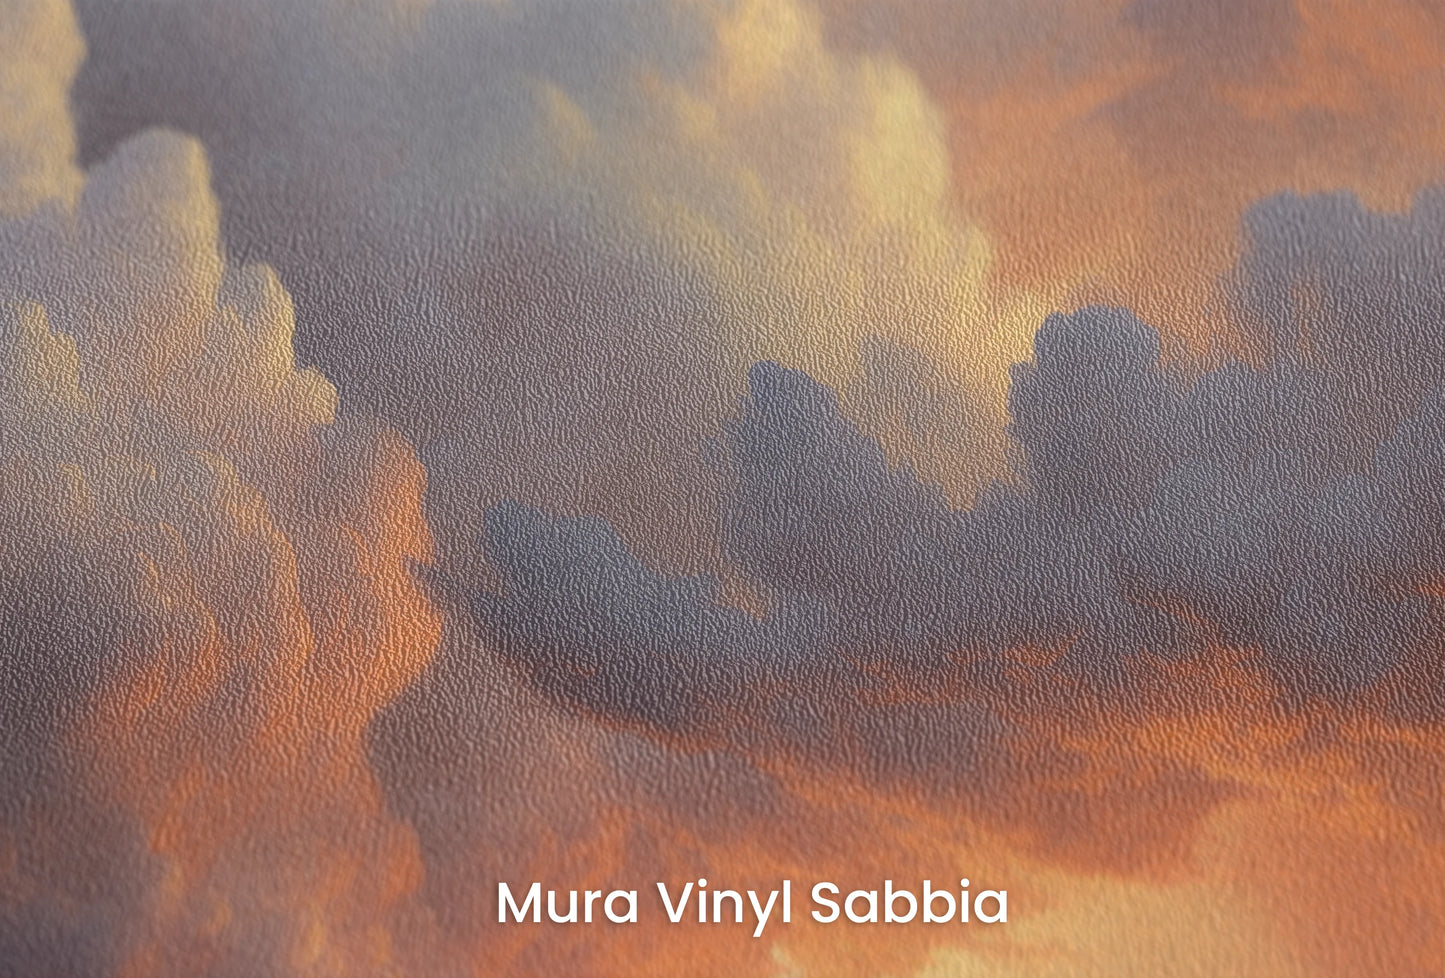 Zbliżenie na artystyczną fototapetę o nazwie Storm's Prelude na podłożu Mura Vinyl Sabbia struktura grubego ziarna piasku.